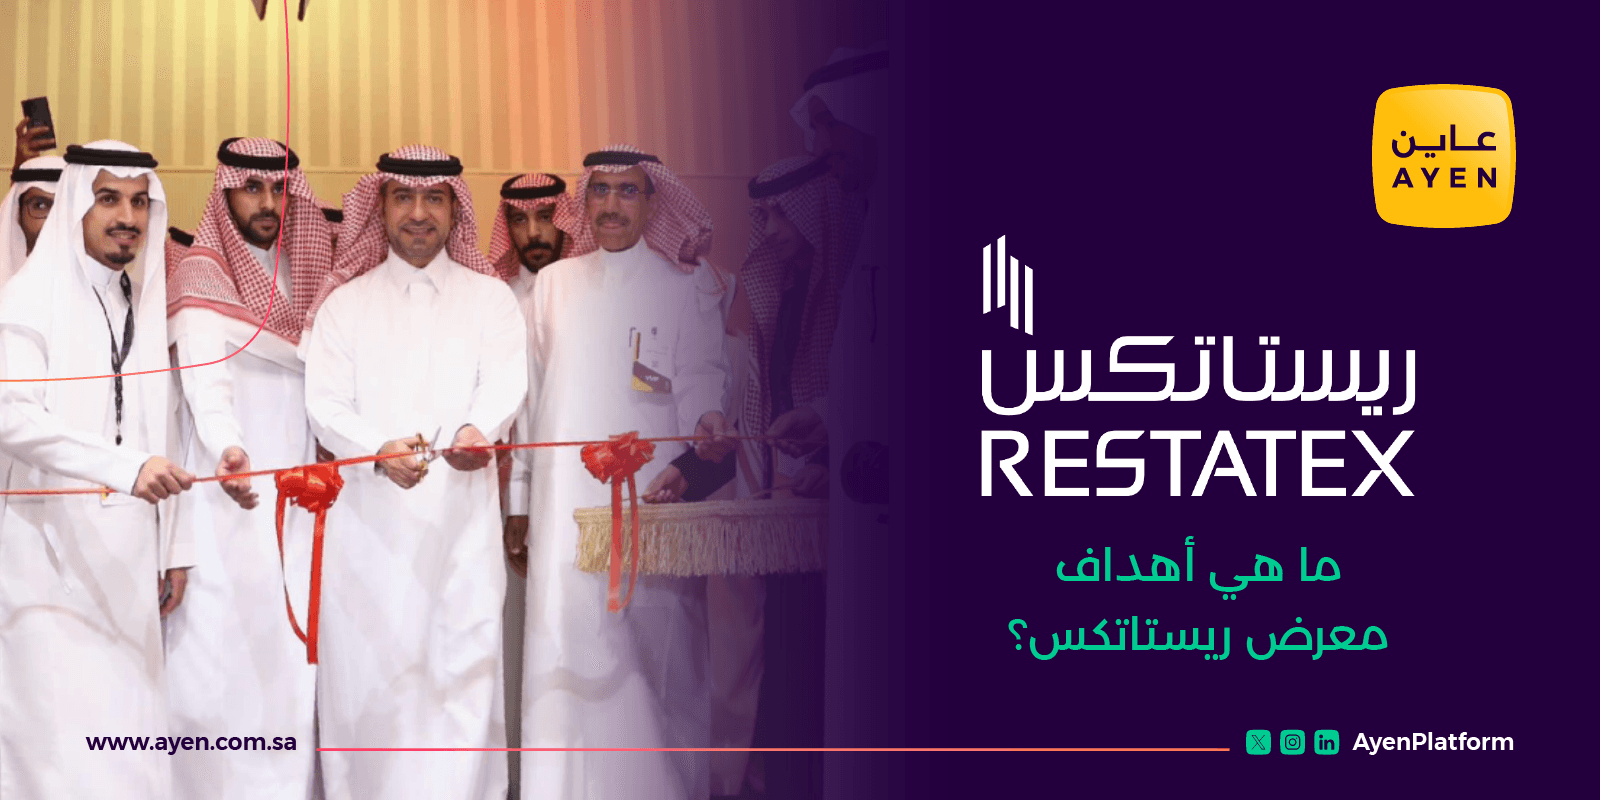 معرض ريستاتكس الرياض العقاري وتشارك فيه عاين لفحص العقارات